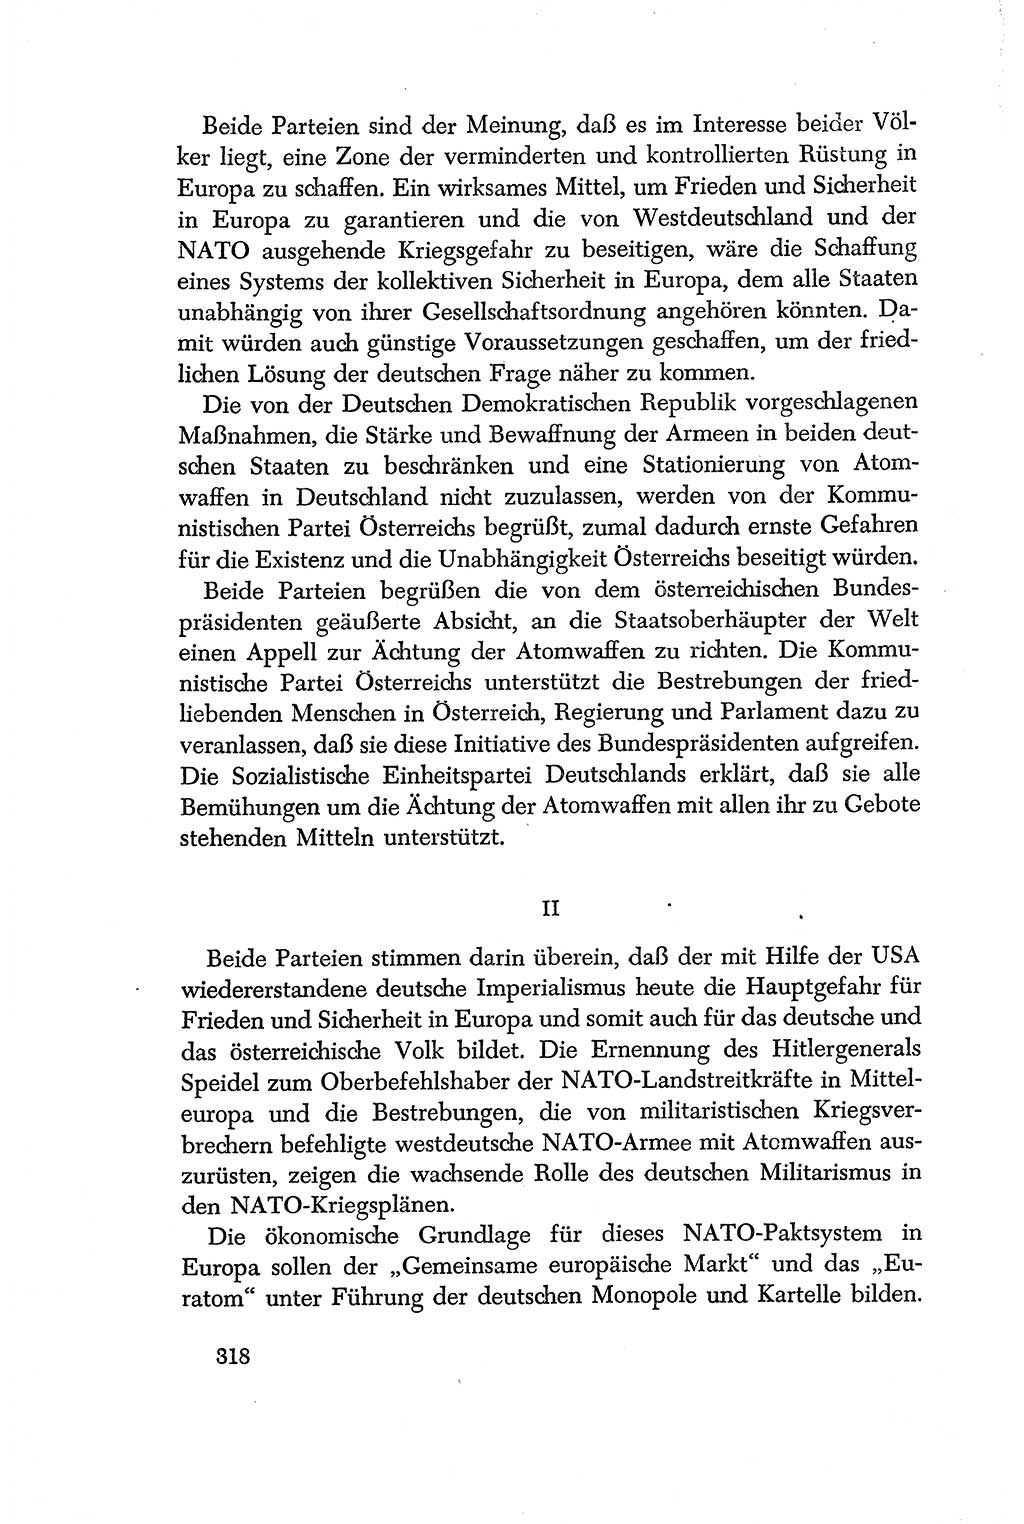 Dokumente der Sozialistischen Einheitspartei Deutschlands (SED) [Deutsche Demokratische Republik (DDR)] 1956-1957, Seite 318 (Dok. SED DDR 1956-1957, S. 318)